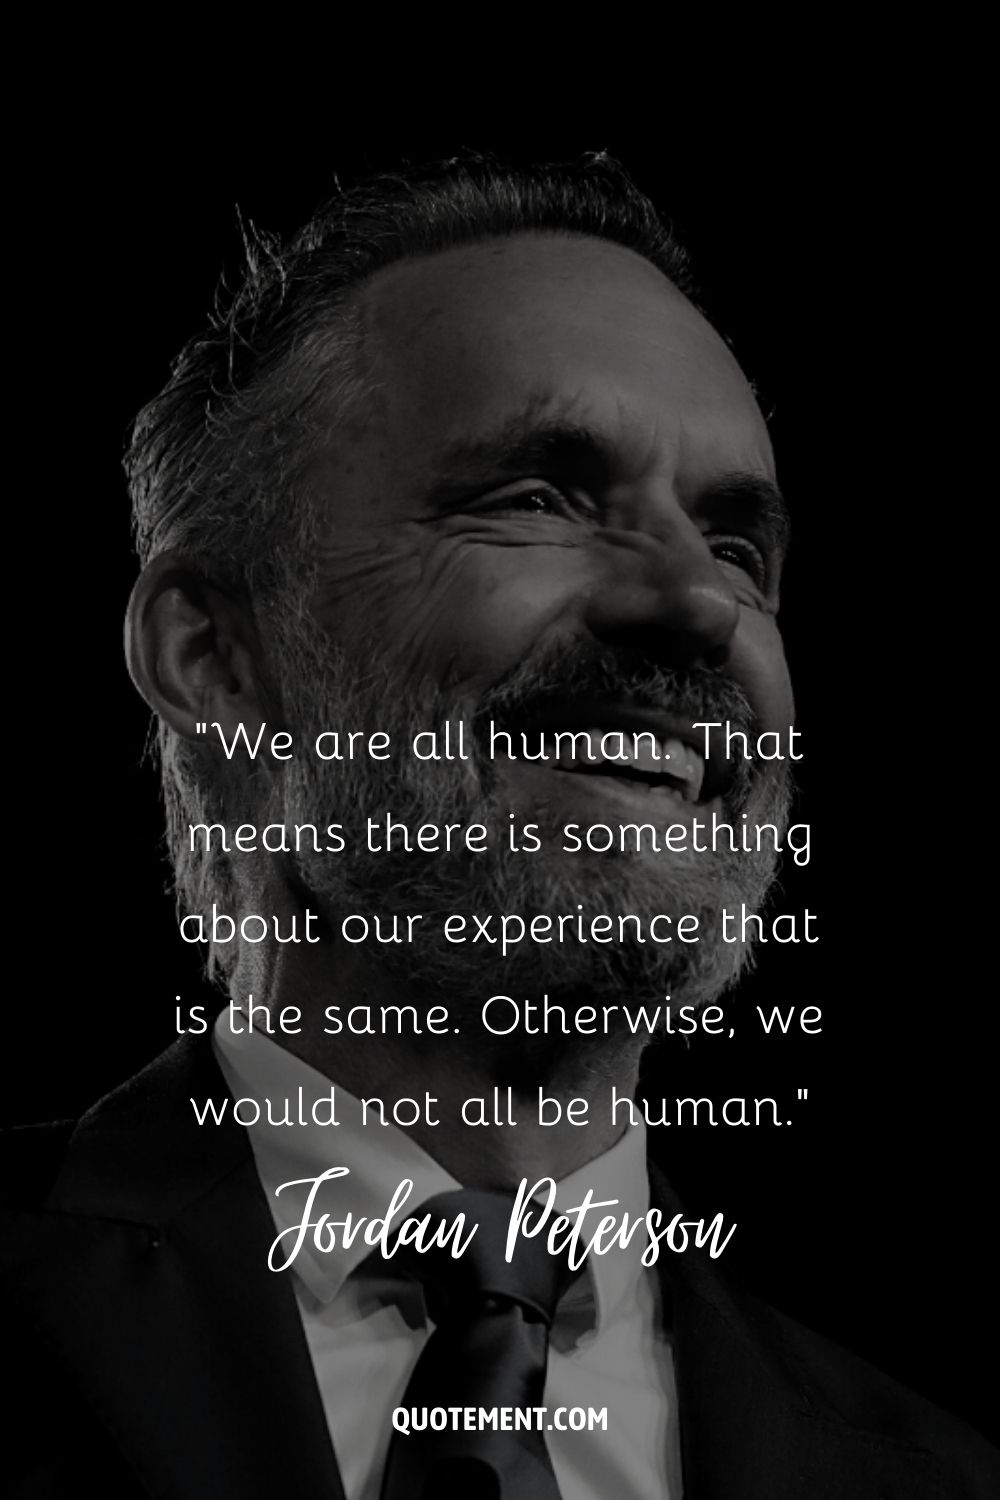 Todos somos humanos. Eso significa que hay algo en nuestra experiencia que es igual. De lo contrario, no todos seríamos humanos.